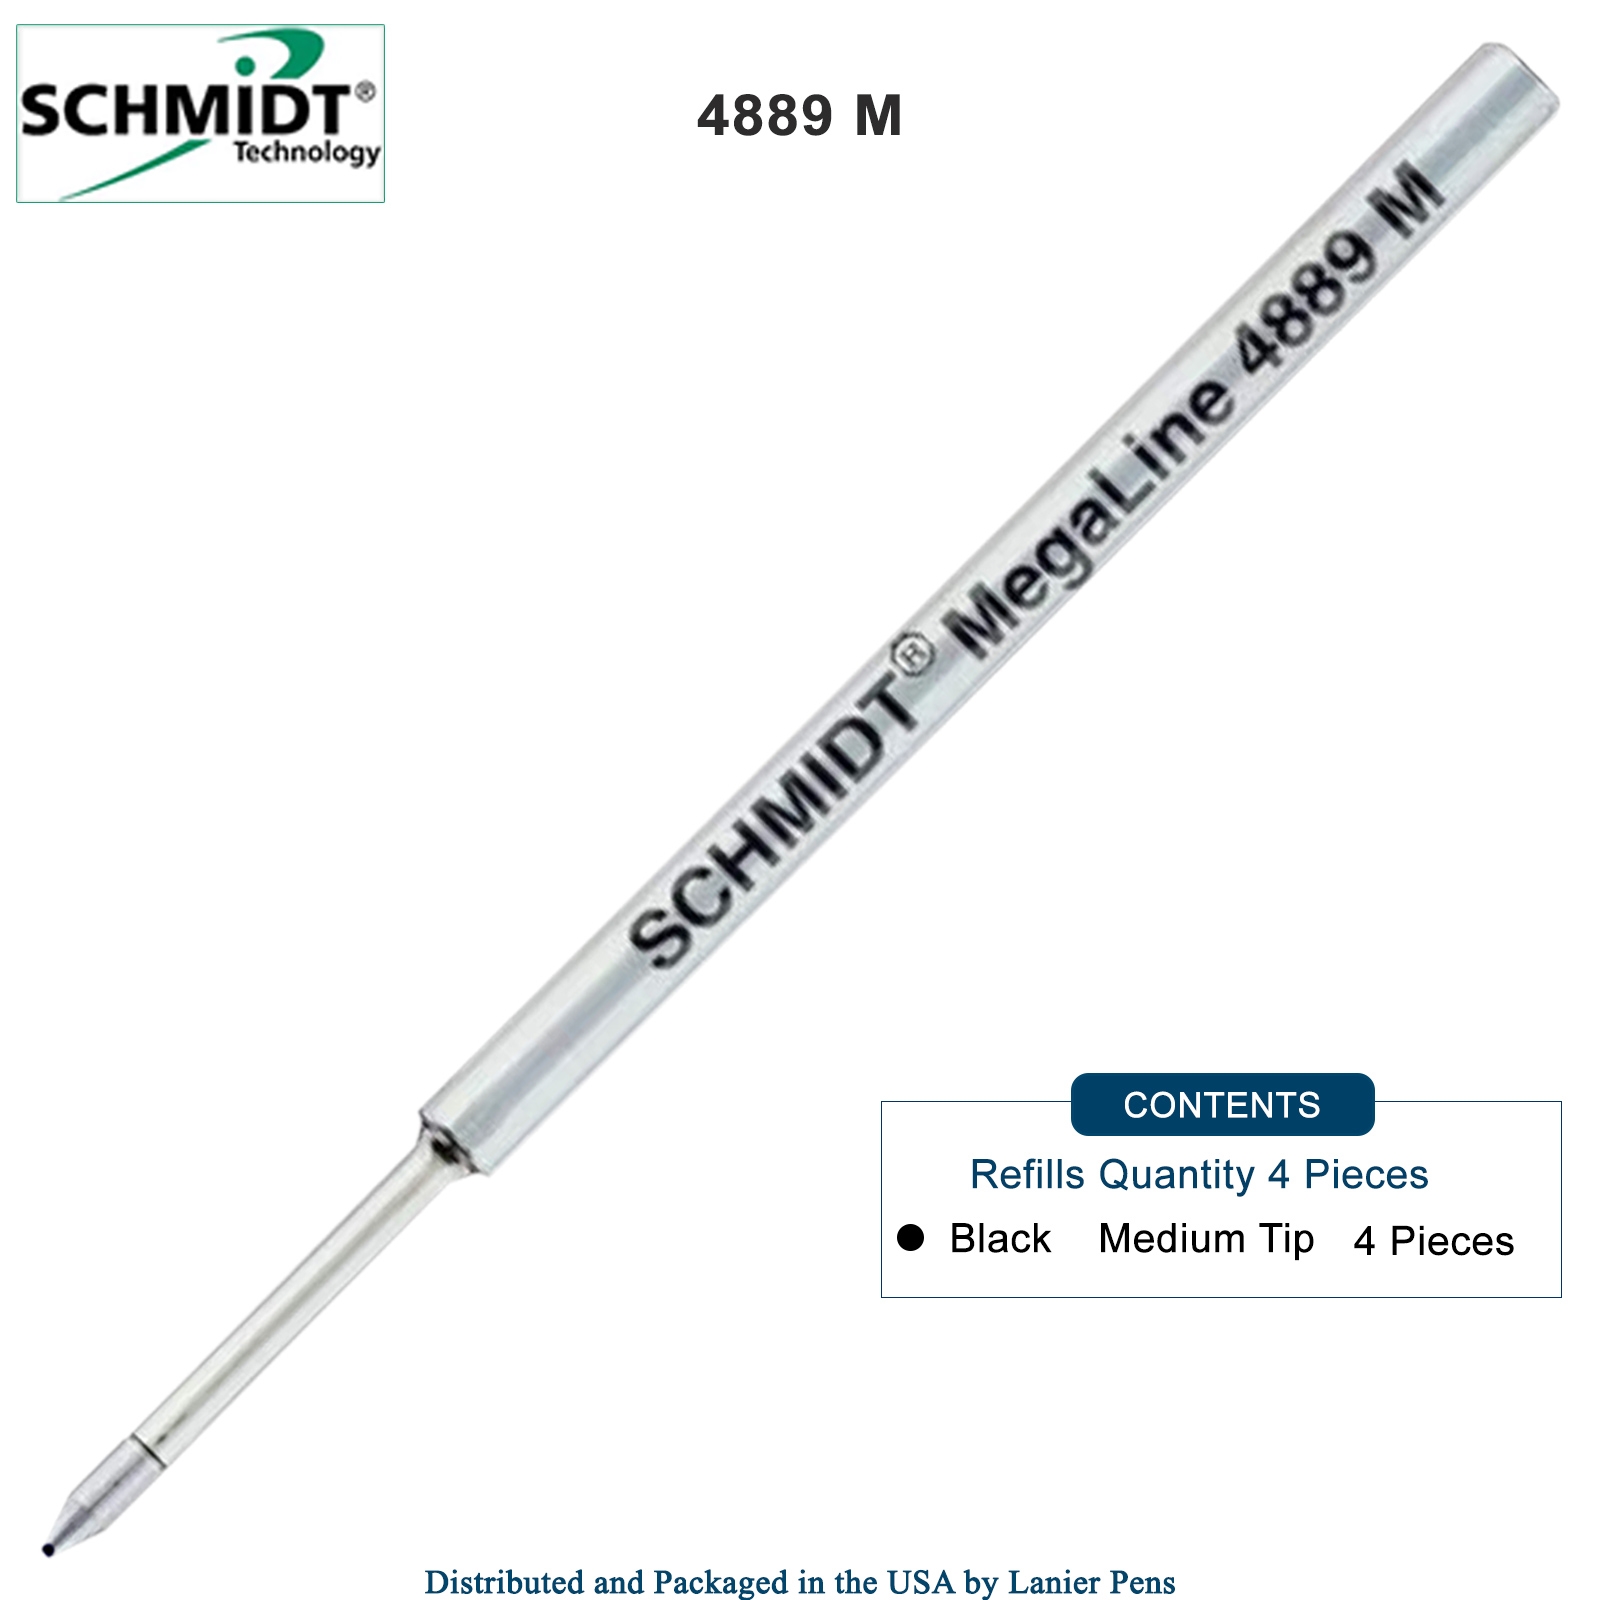 4 Pack - Schmidt MegaLine 4889 Pressurized Refill - Black Ink